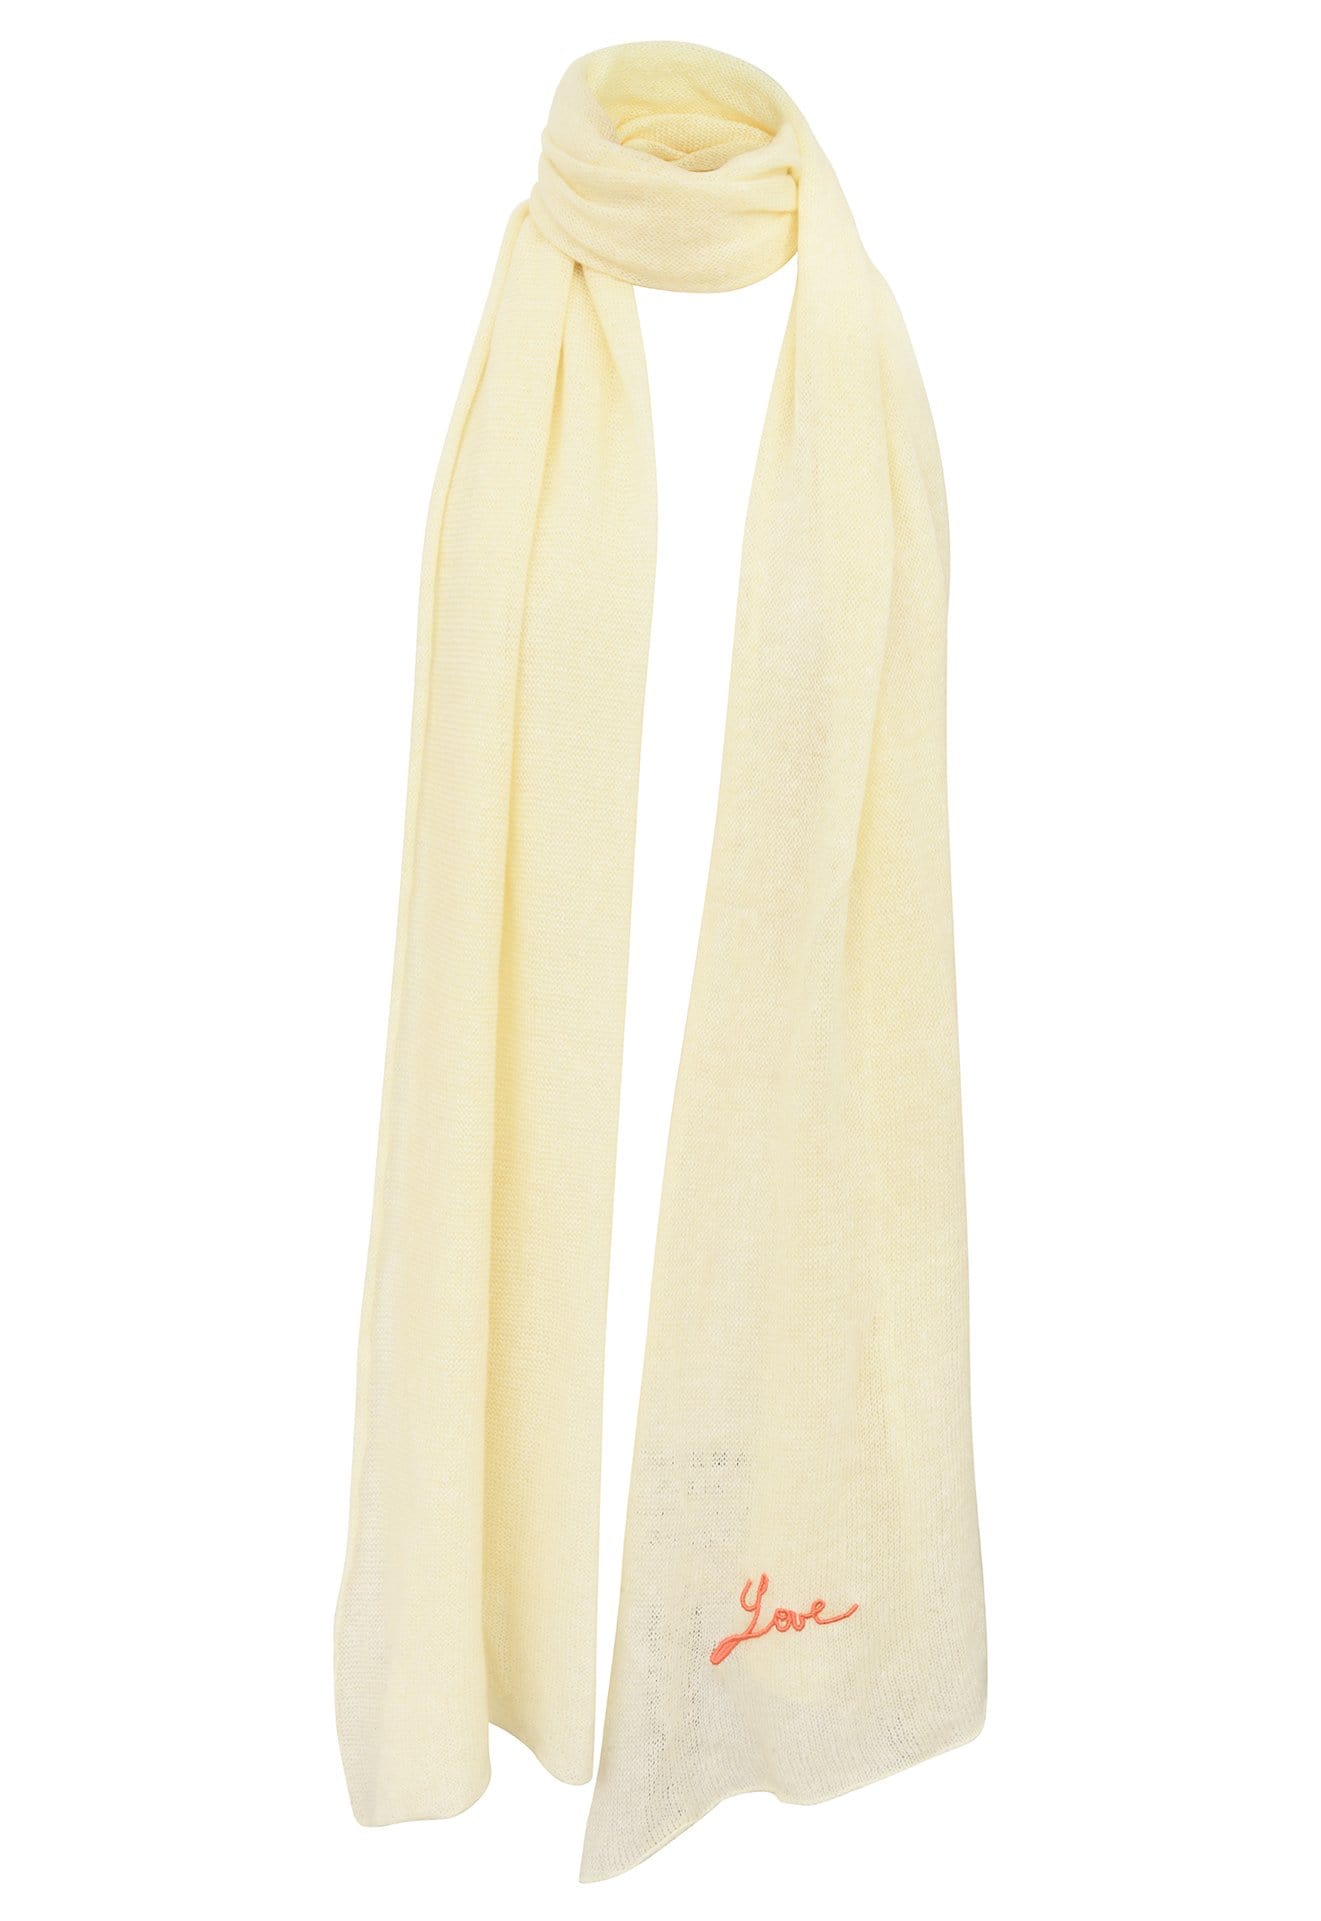 Etole jaune pâle avec broderie Love tricotée en France 200x60 cm 58% cachemire 42% lin